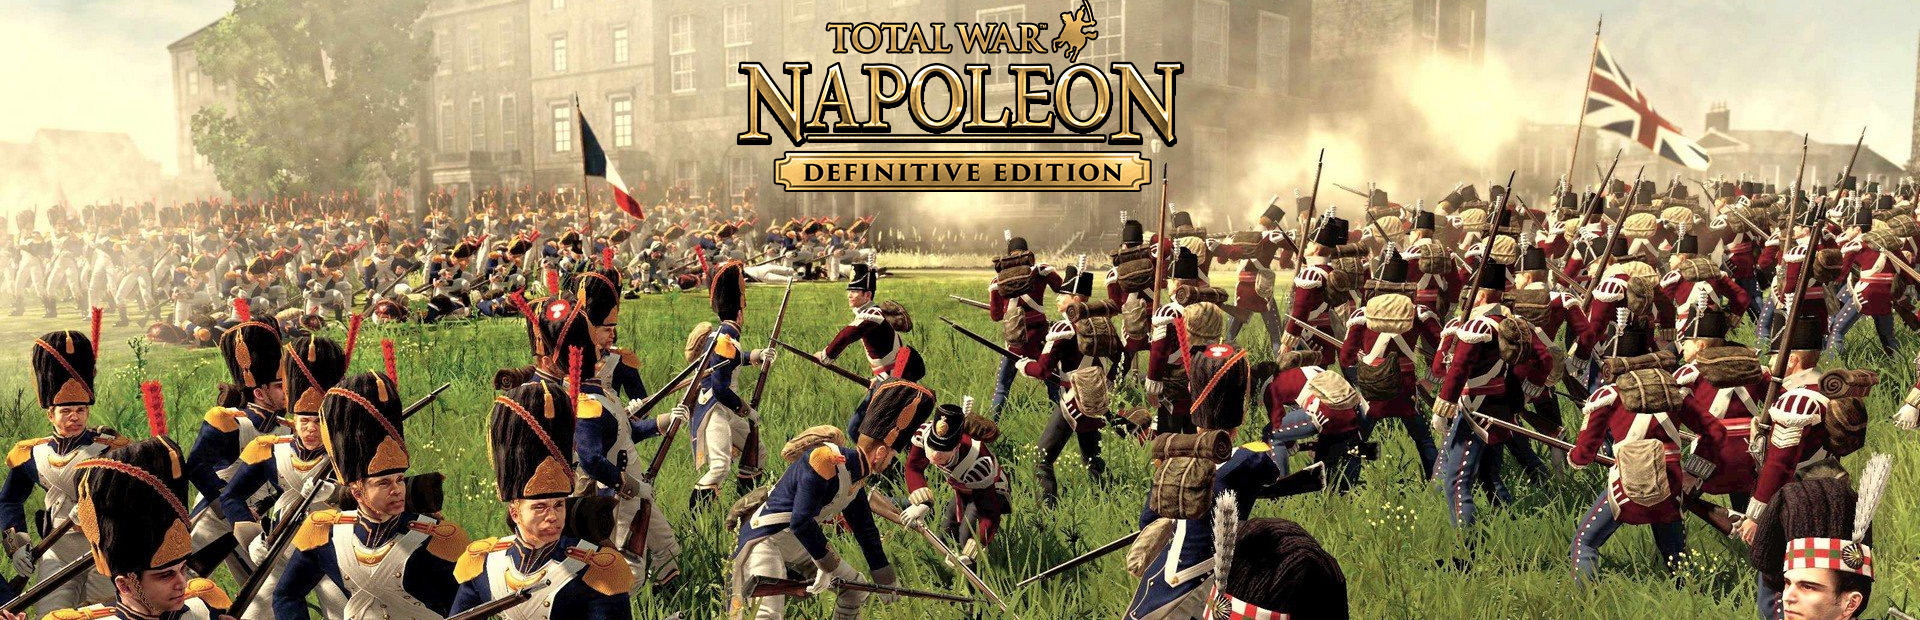 دانلود بازی Total War: NAPOLEON برای پی سی | گیمباتو